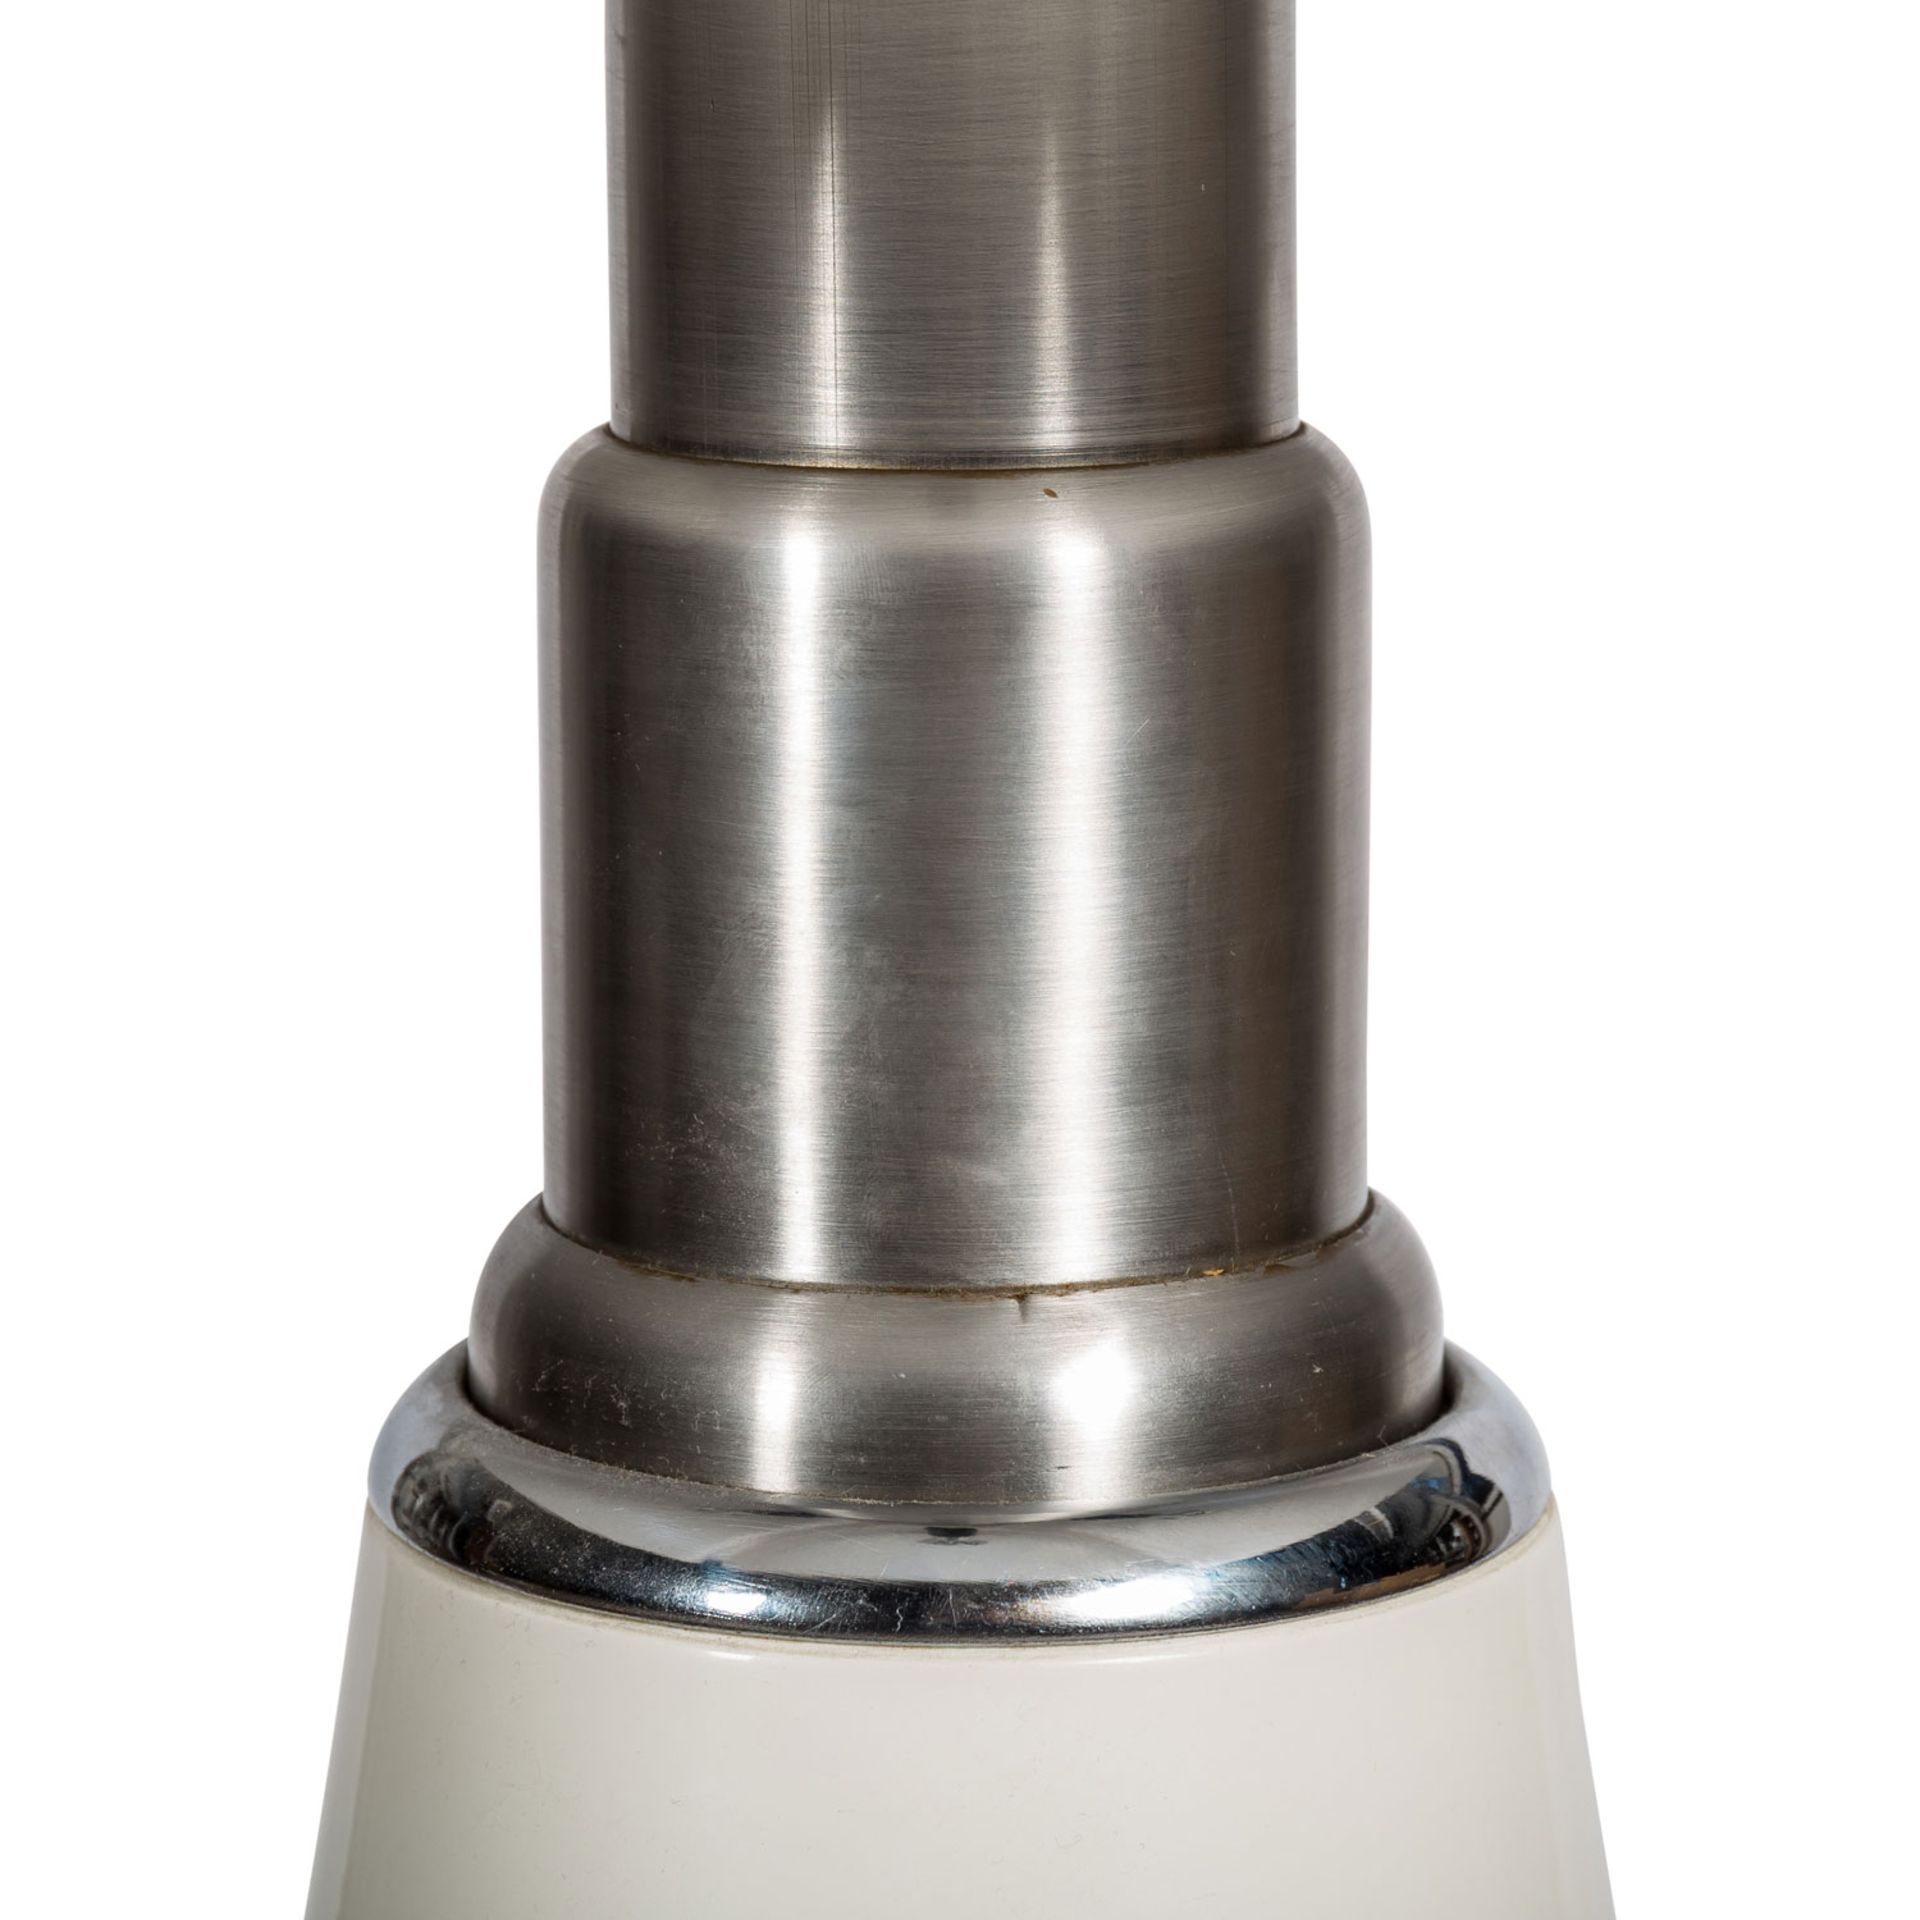 AULENTI, GAE "LAMPE PIPISTRELLO", Design des 20. Jh., - Image 2 of 3